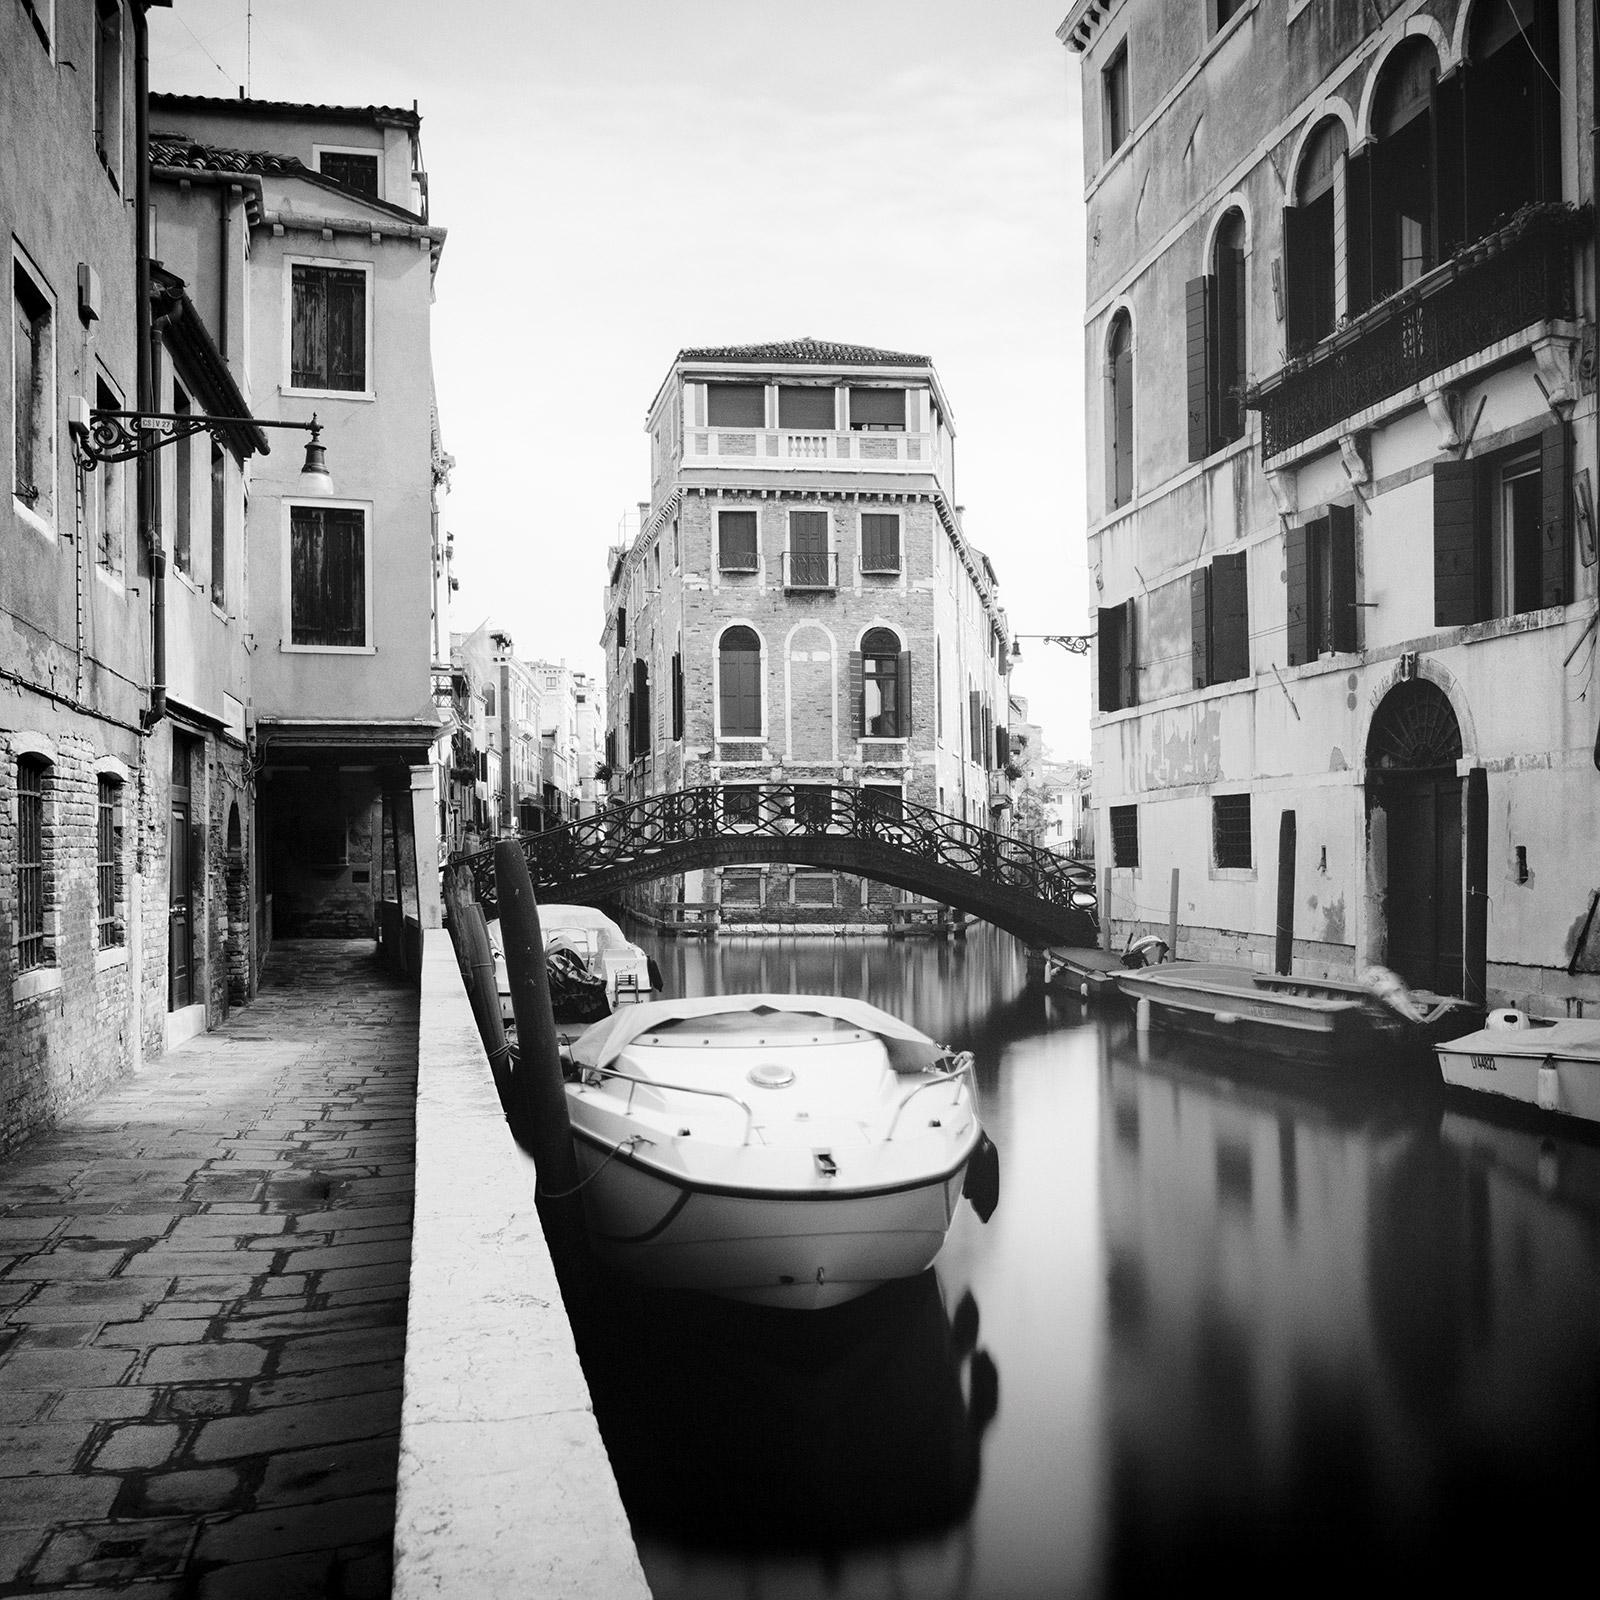 Vieux pont en fer forgé, Venise, Italie, photographie noir et blanc, paysage urbain